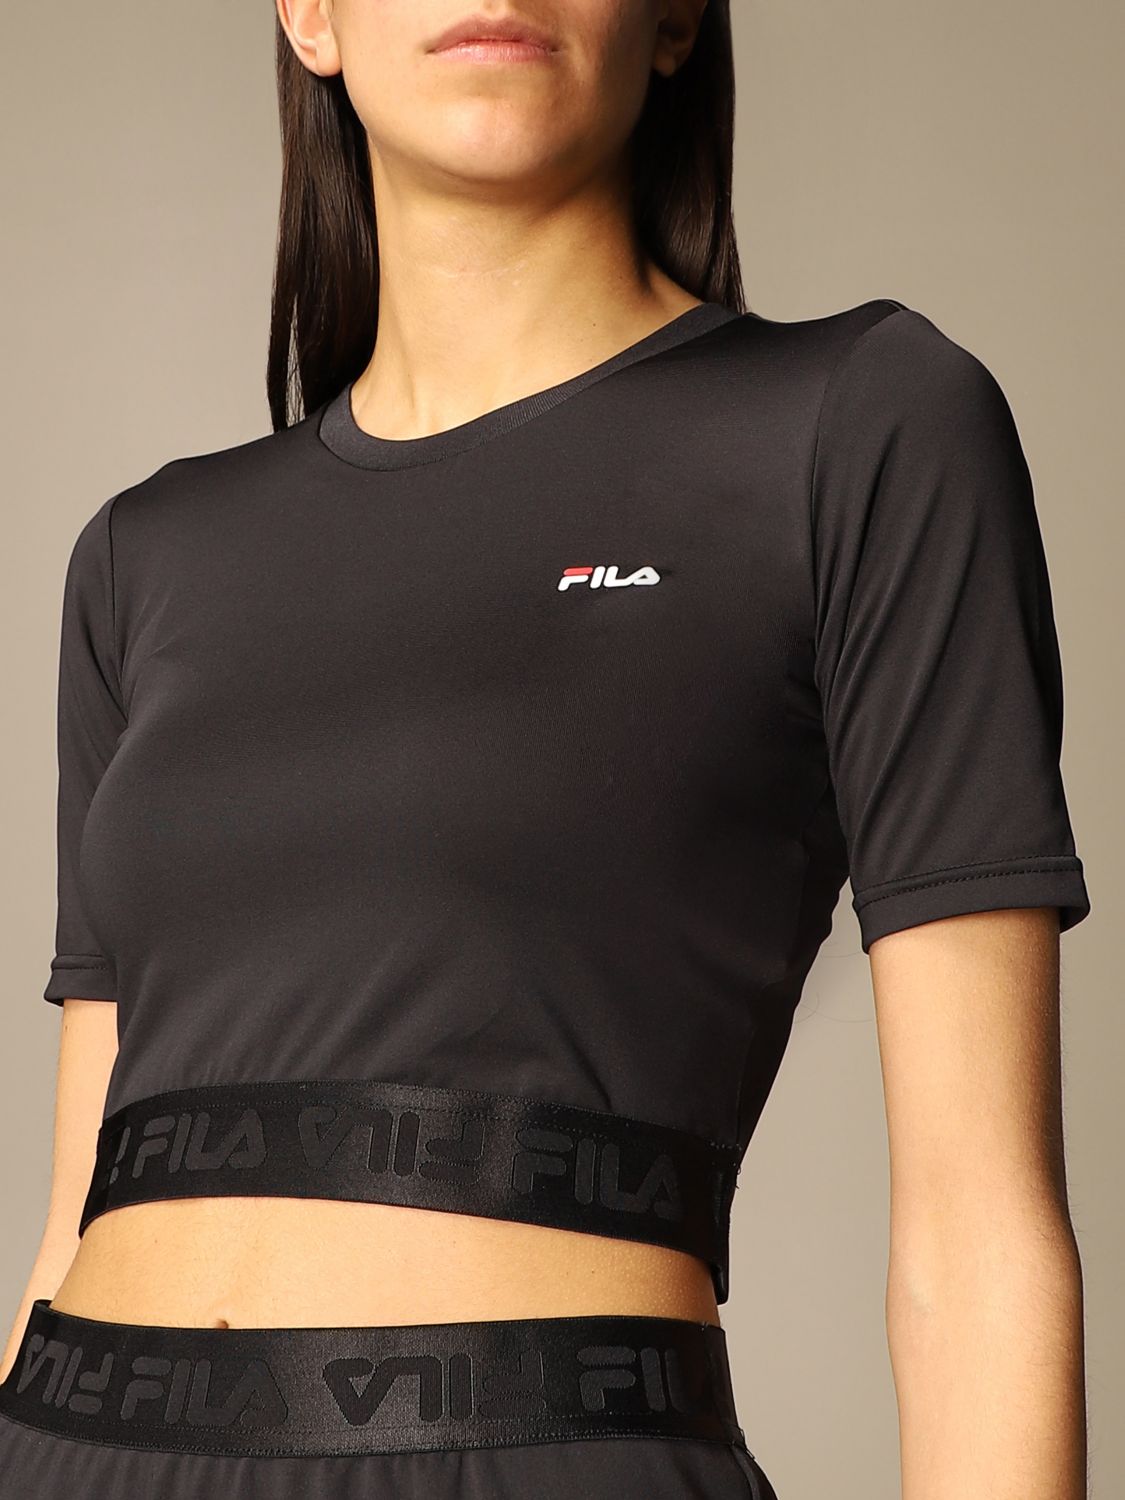 Buy > fila black t shirt > in stock